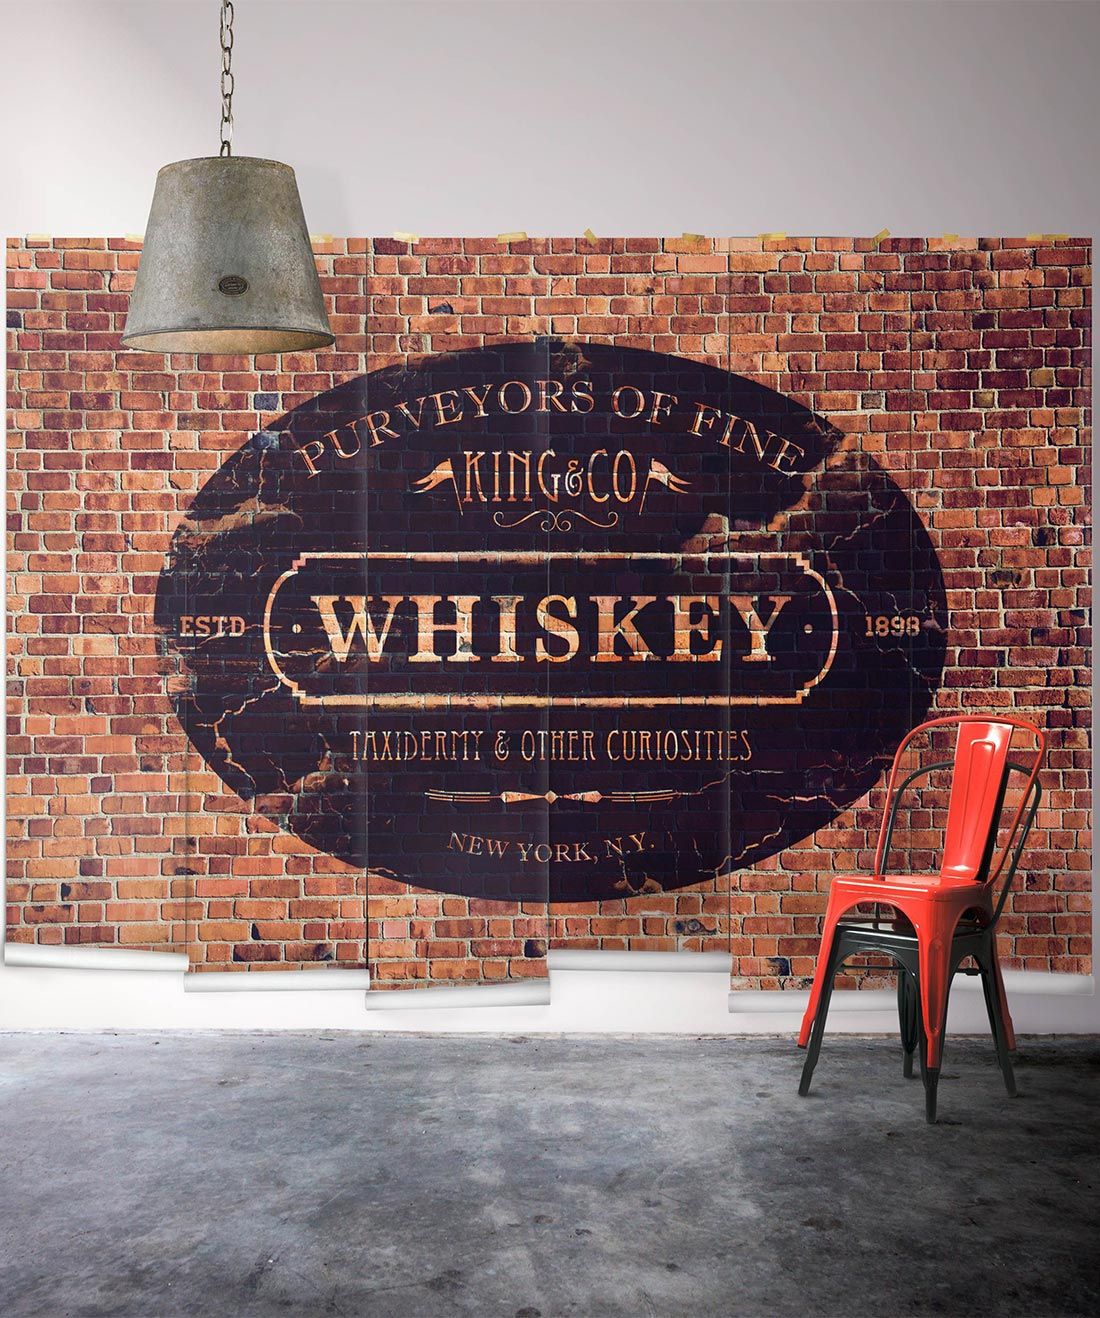 King & Co. Whiskey Mural